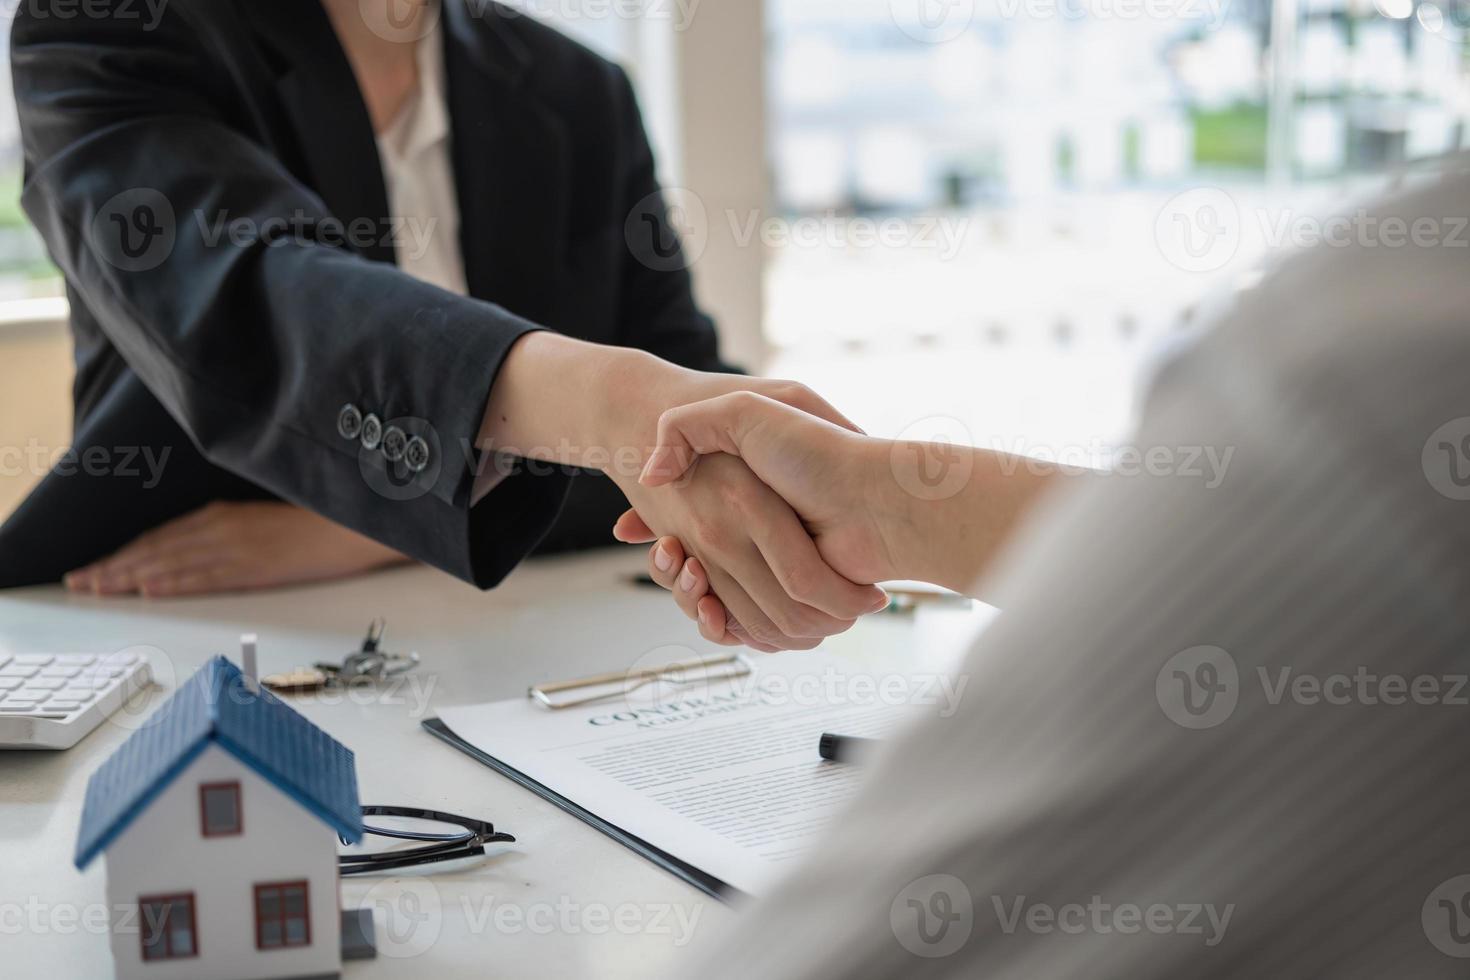 garantier, inteckningar, signeringar, kontrakt, avtalskoncept, fastighetsmäklare skakar hand med kunder efter att ha skrivit på kontraktet och gratulerar dem efter att ha nått en överenskommelse. foto